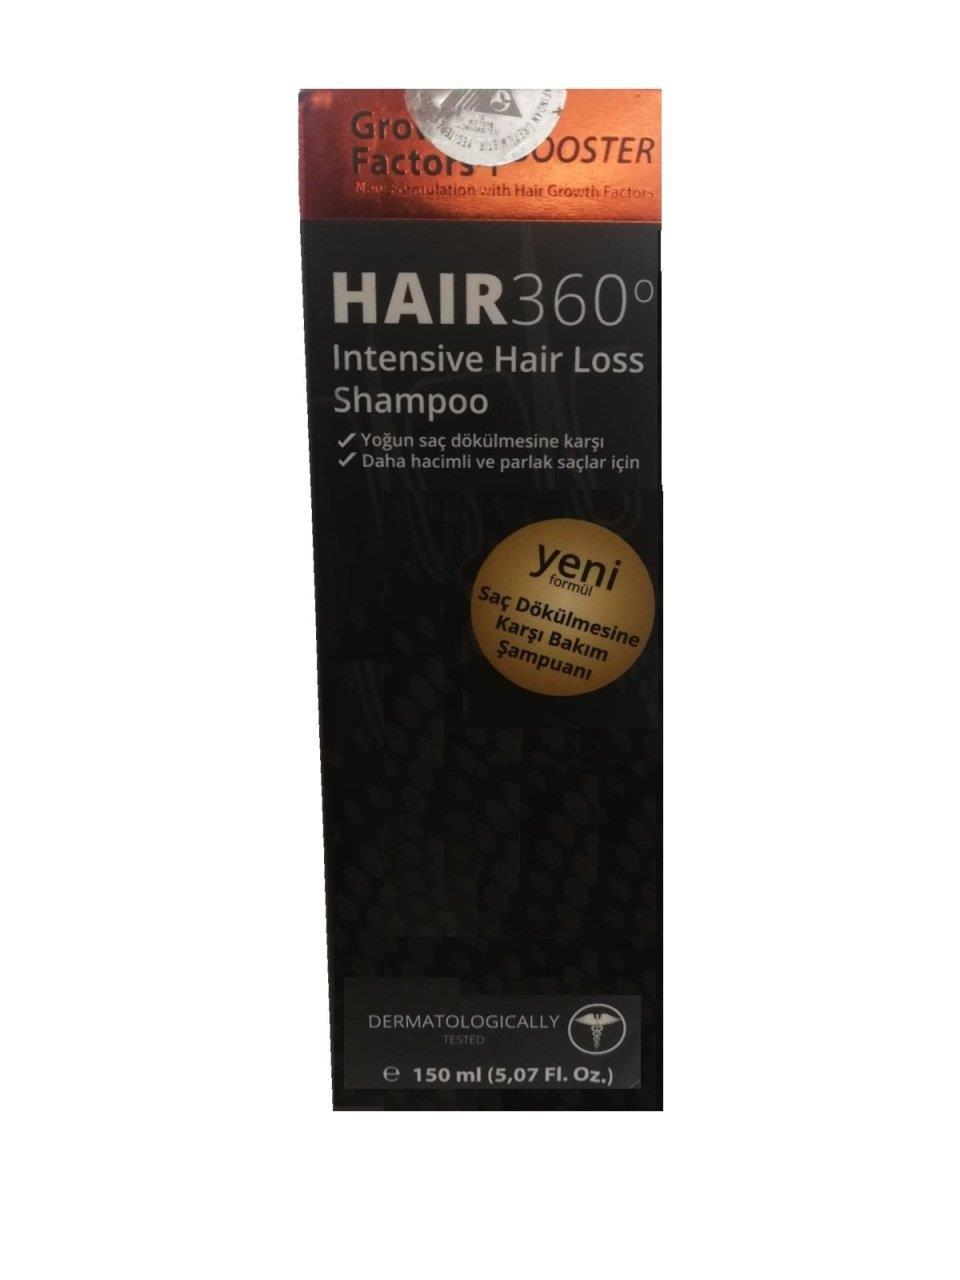 Hair 360 GFB İntensive Hair Loss Shampoo 150 ml